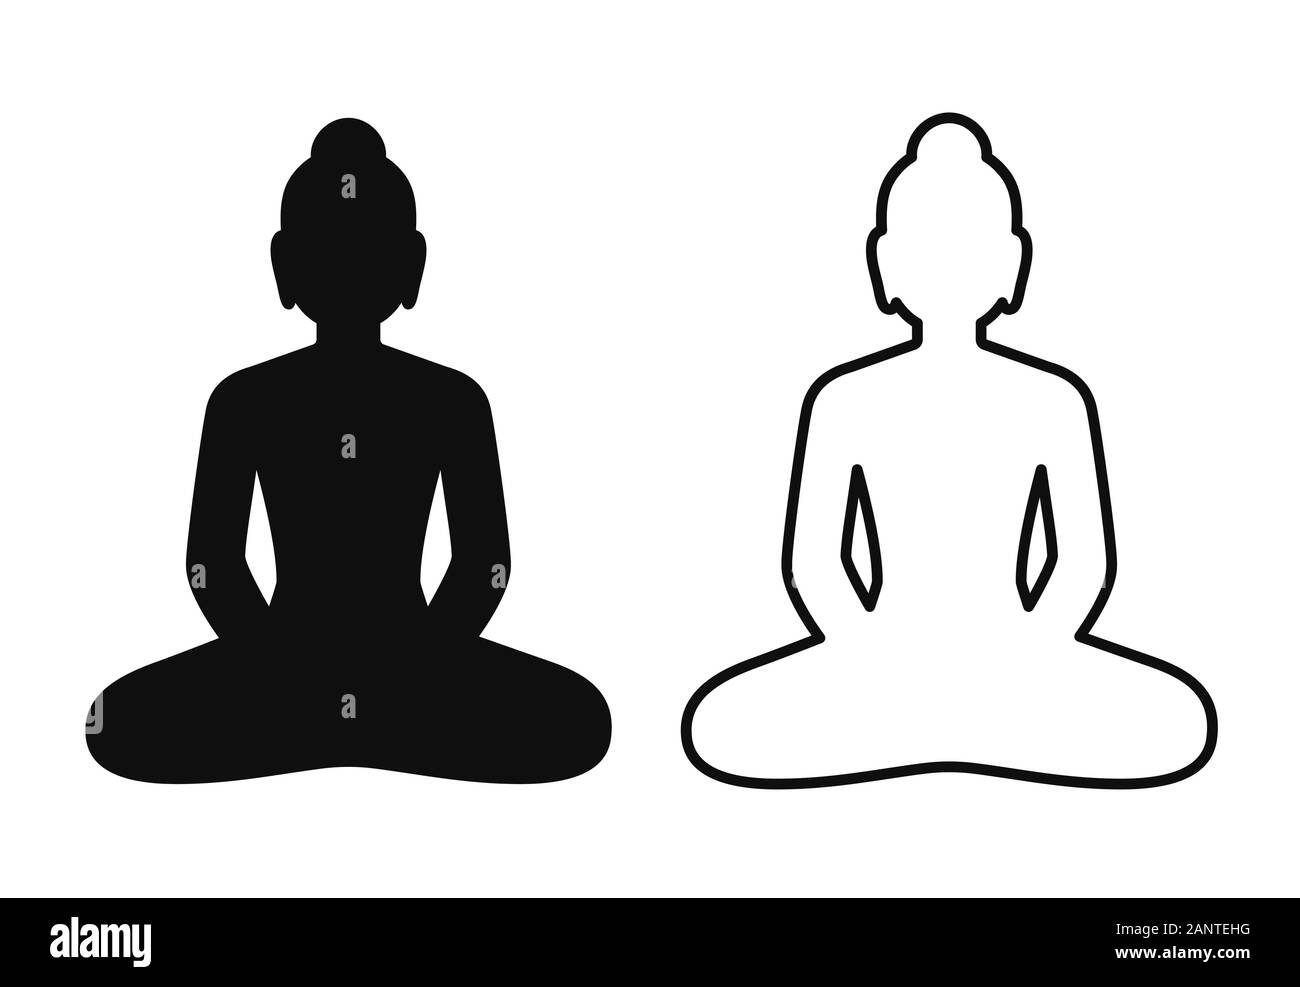 Icône simple et minimal de statue de Bouddha assis en lotus. Silhouette en noir et blanc et de dessins au dessin, symbole vecteur isolé. Une pleine conscience Illustration de Vecteur